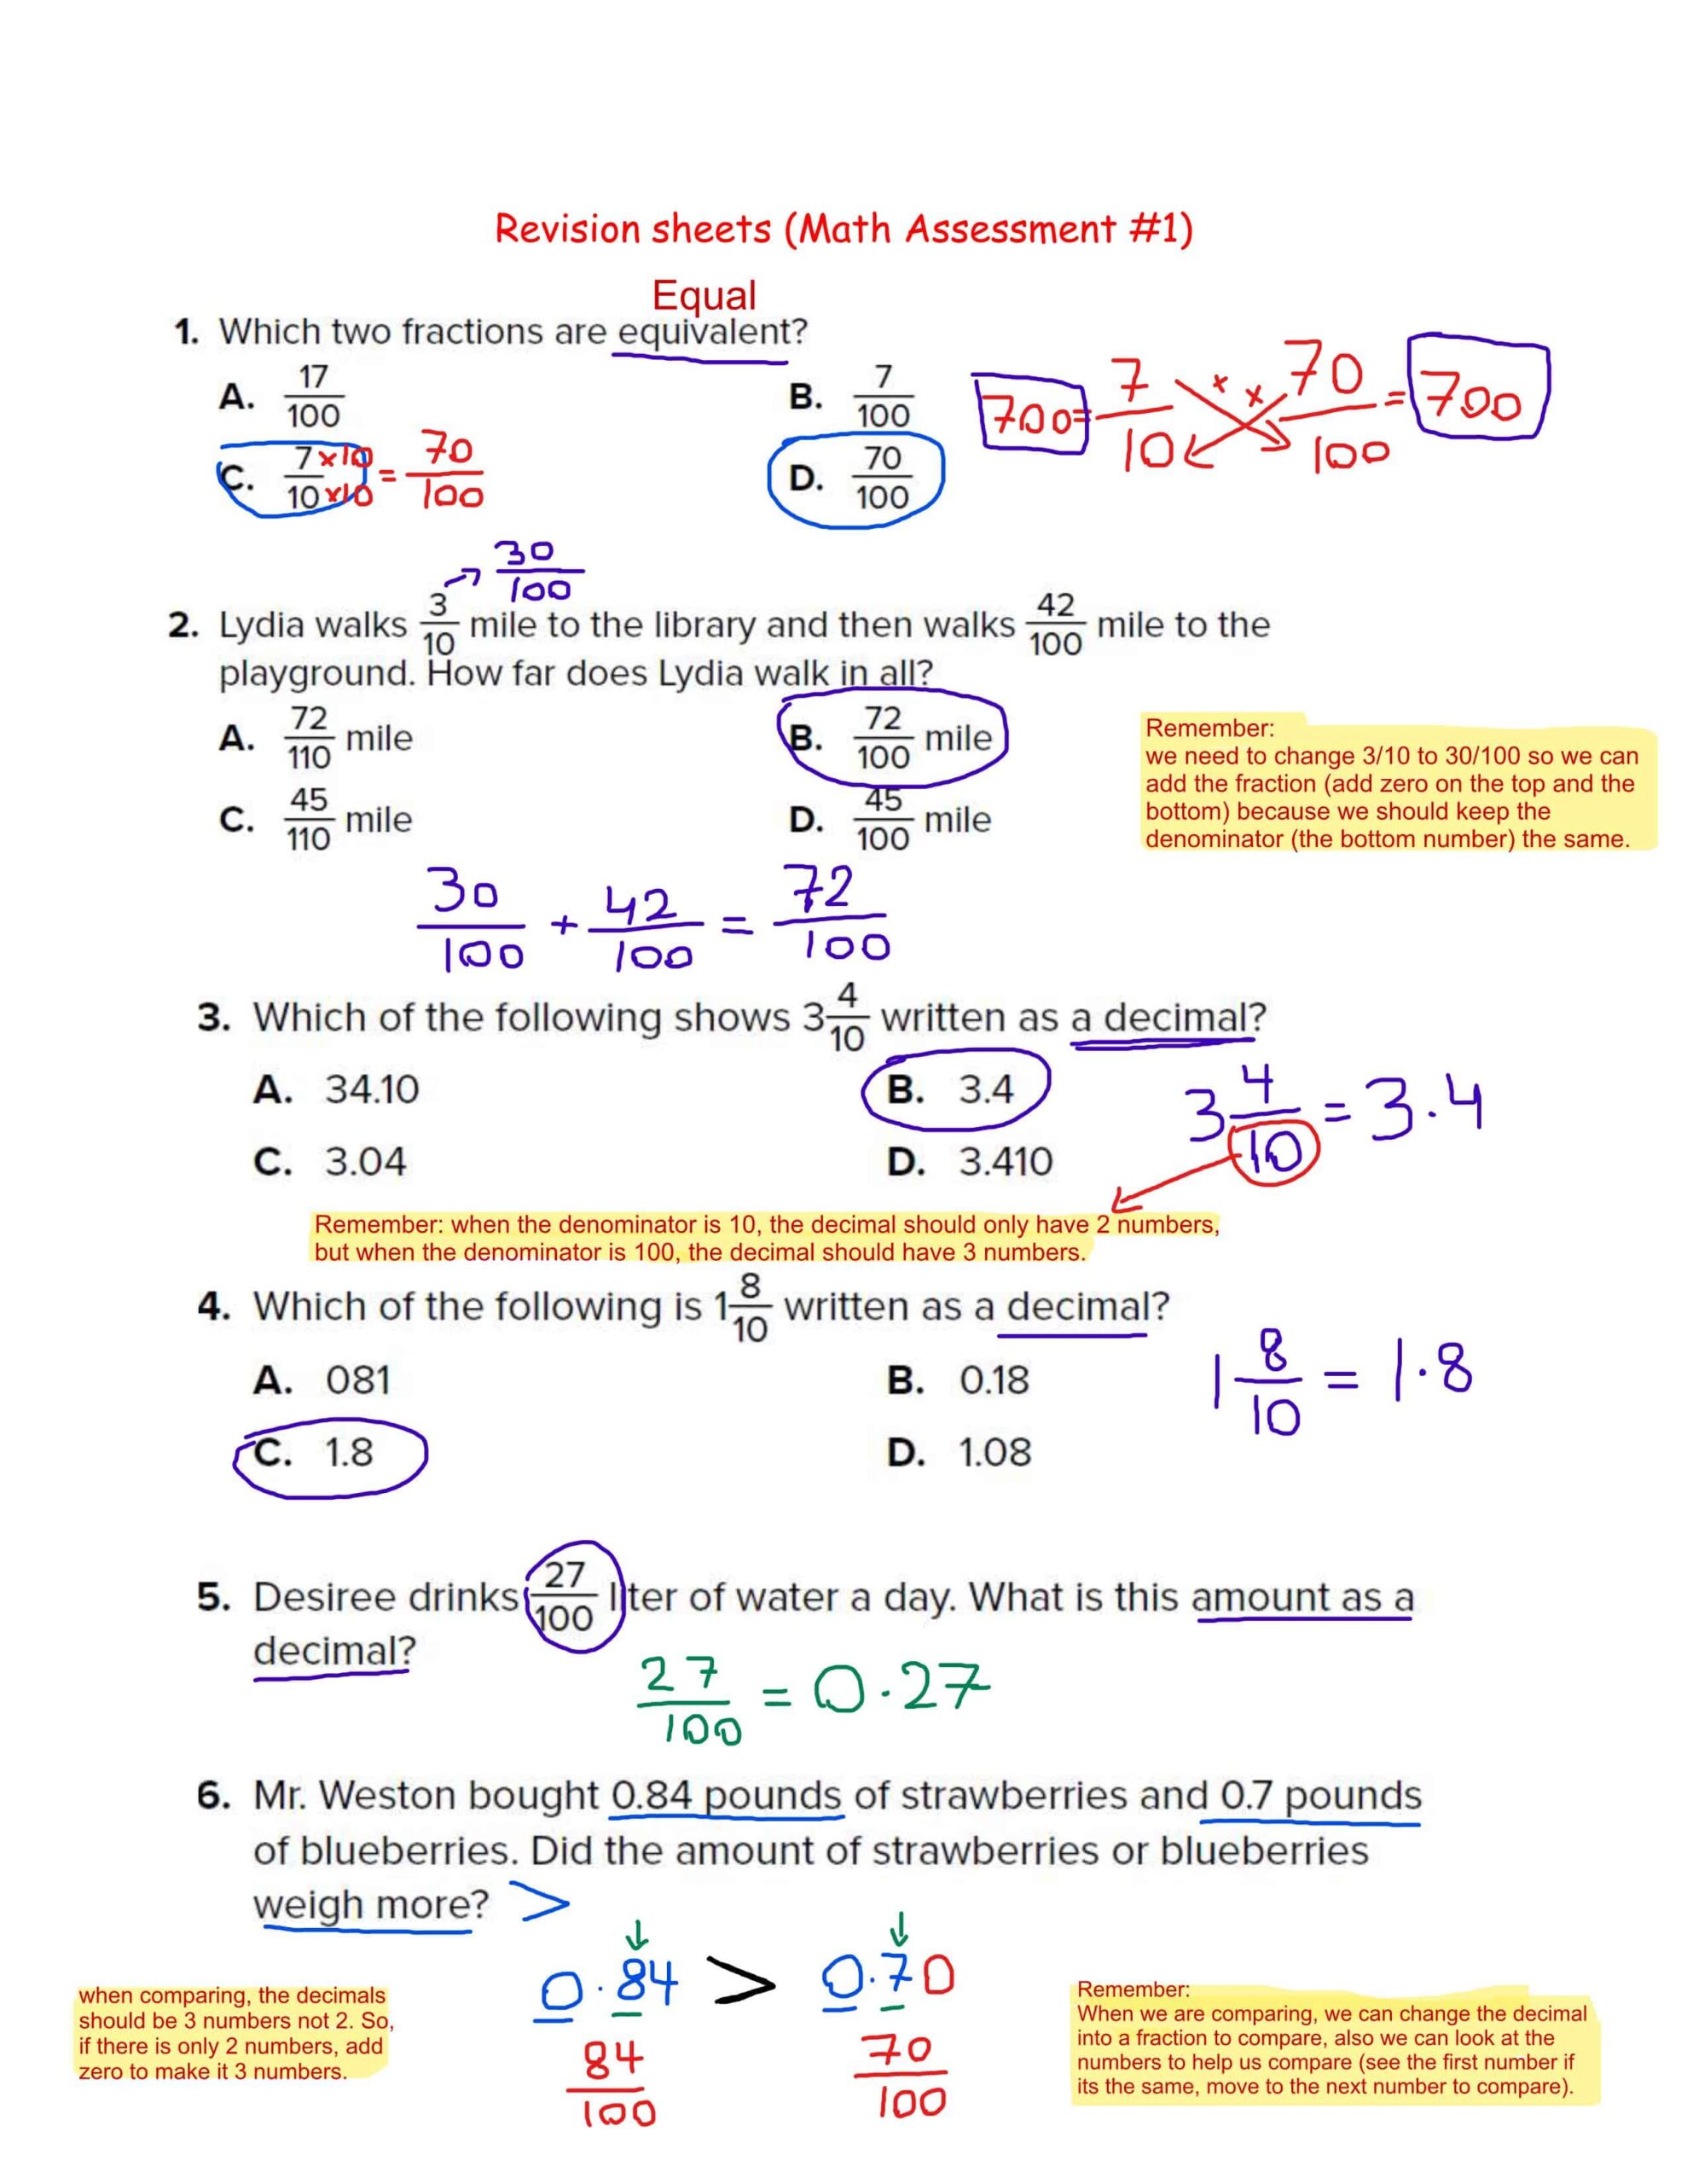 حل أوراق عمل مراجعة الوحدة الثانية عشر الرياضيات المتكاملة الصف الرابع